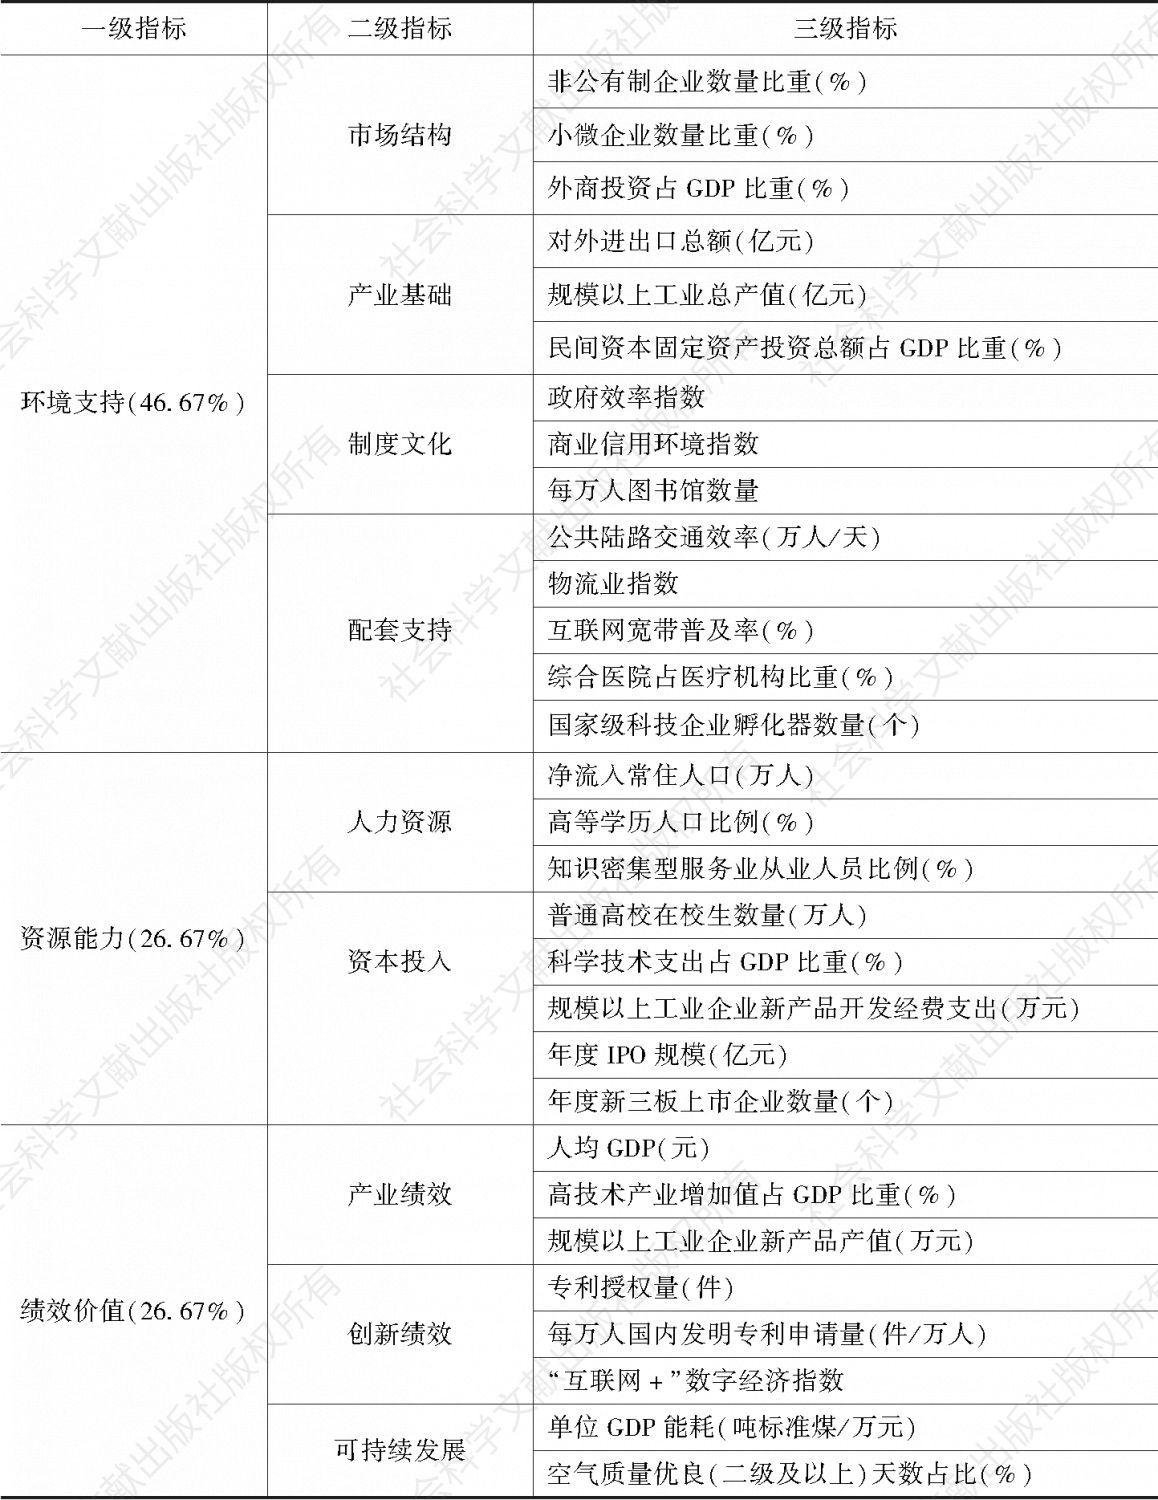 表1 中国双创指数指标体系及各指标权重